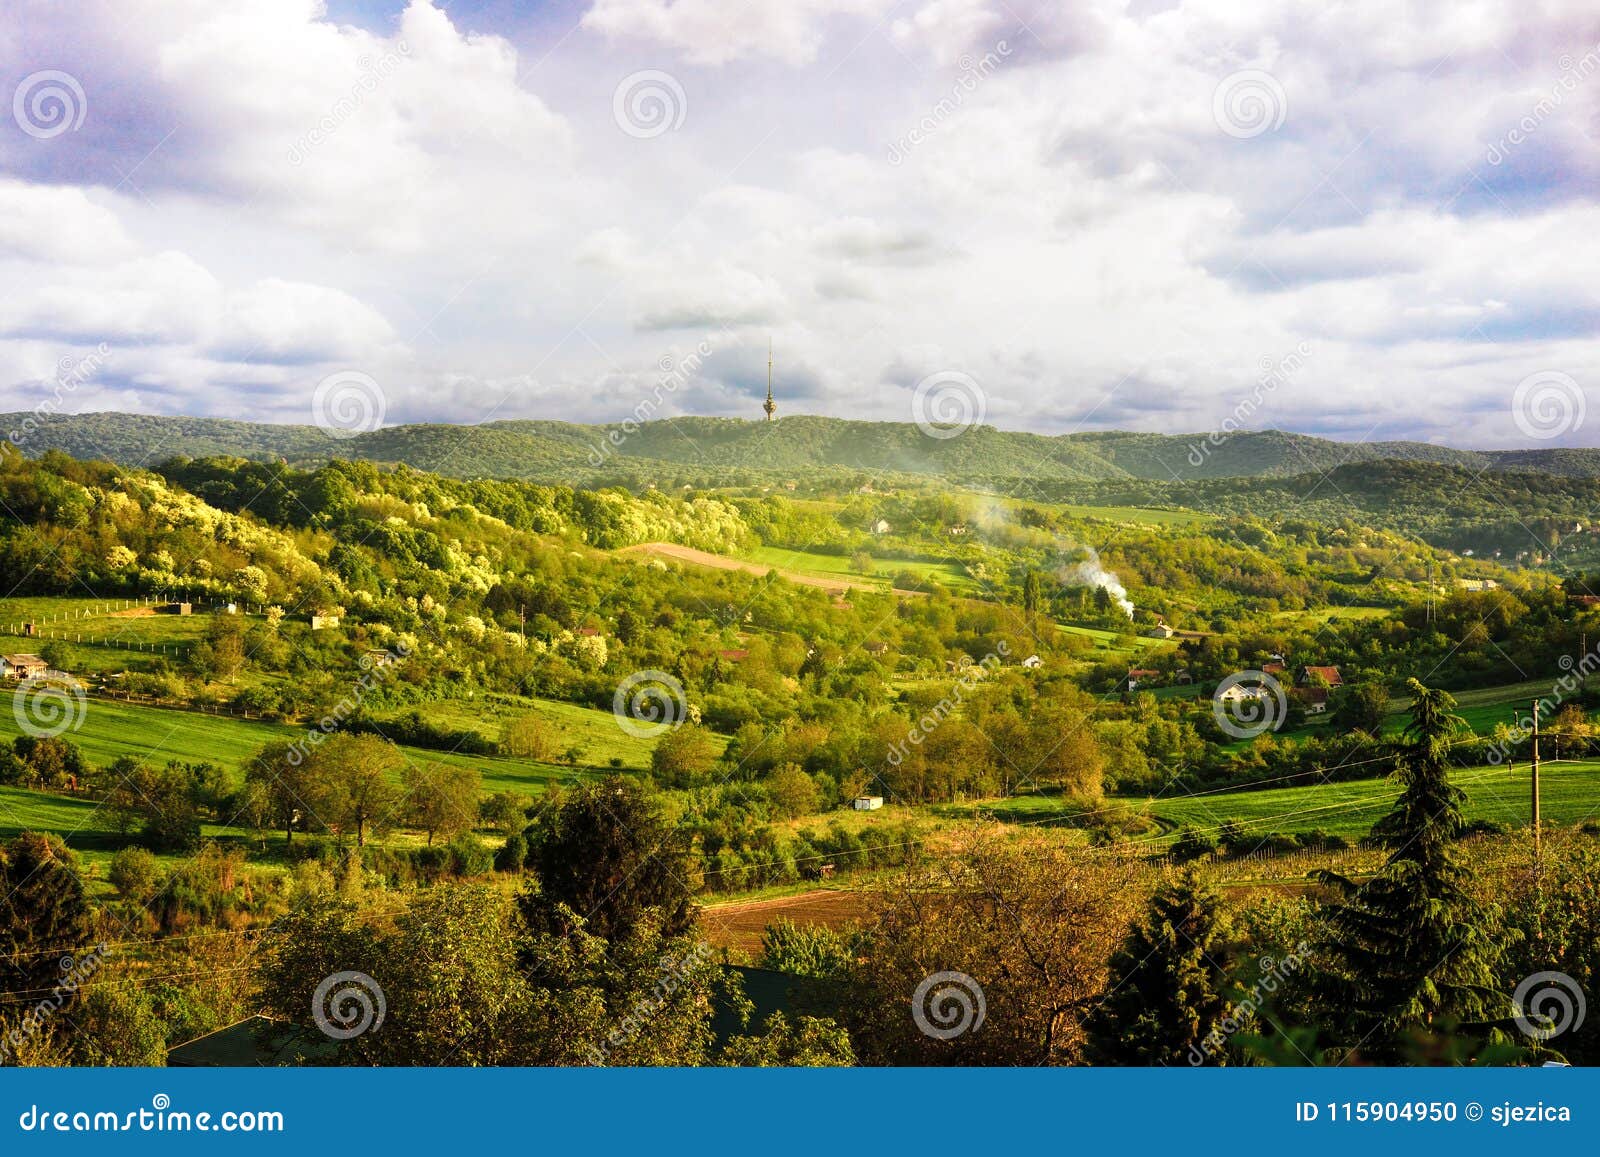 spring landscape of the national park fruska gora, serbia